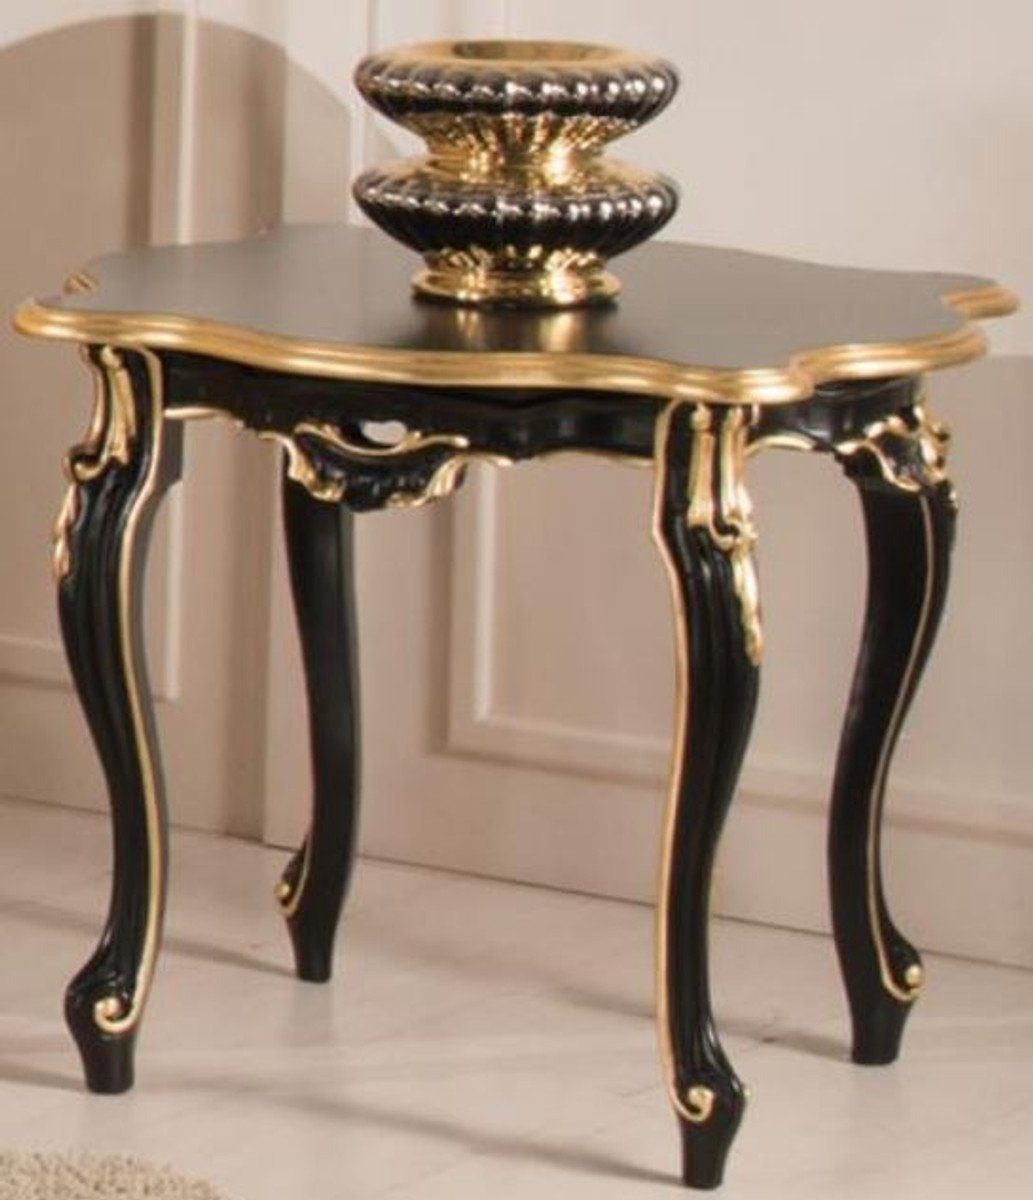 Casa Padrino Beistelltisch Luxus Barock Beistelltisch Schwarz / Gold 62 x 62 x H. 57 cm - Edler Tisch im Barockstil - Barock Möbel